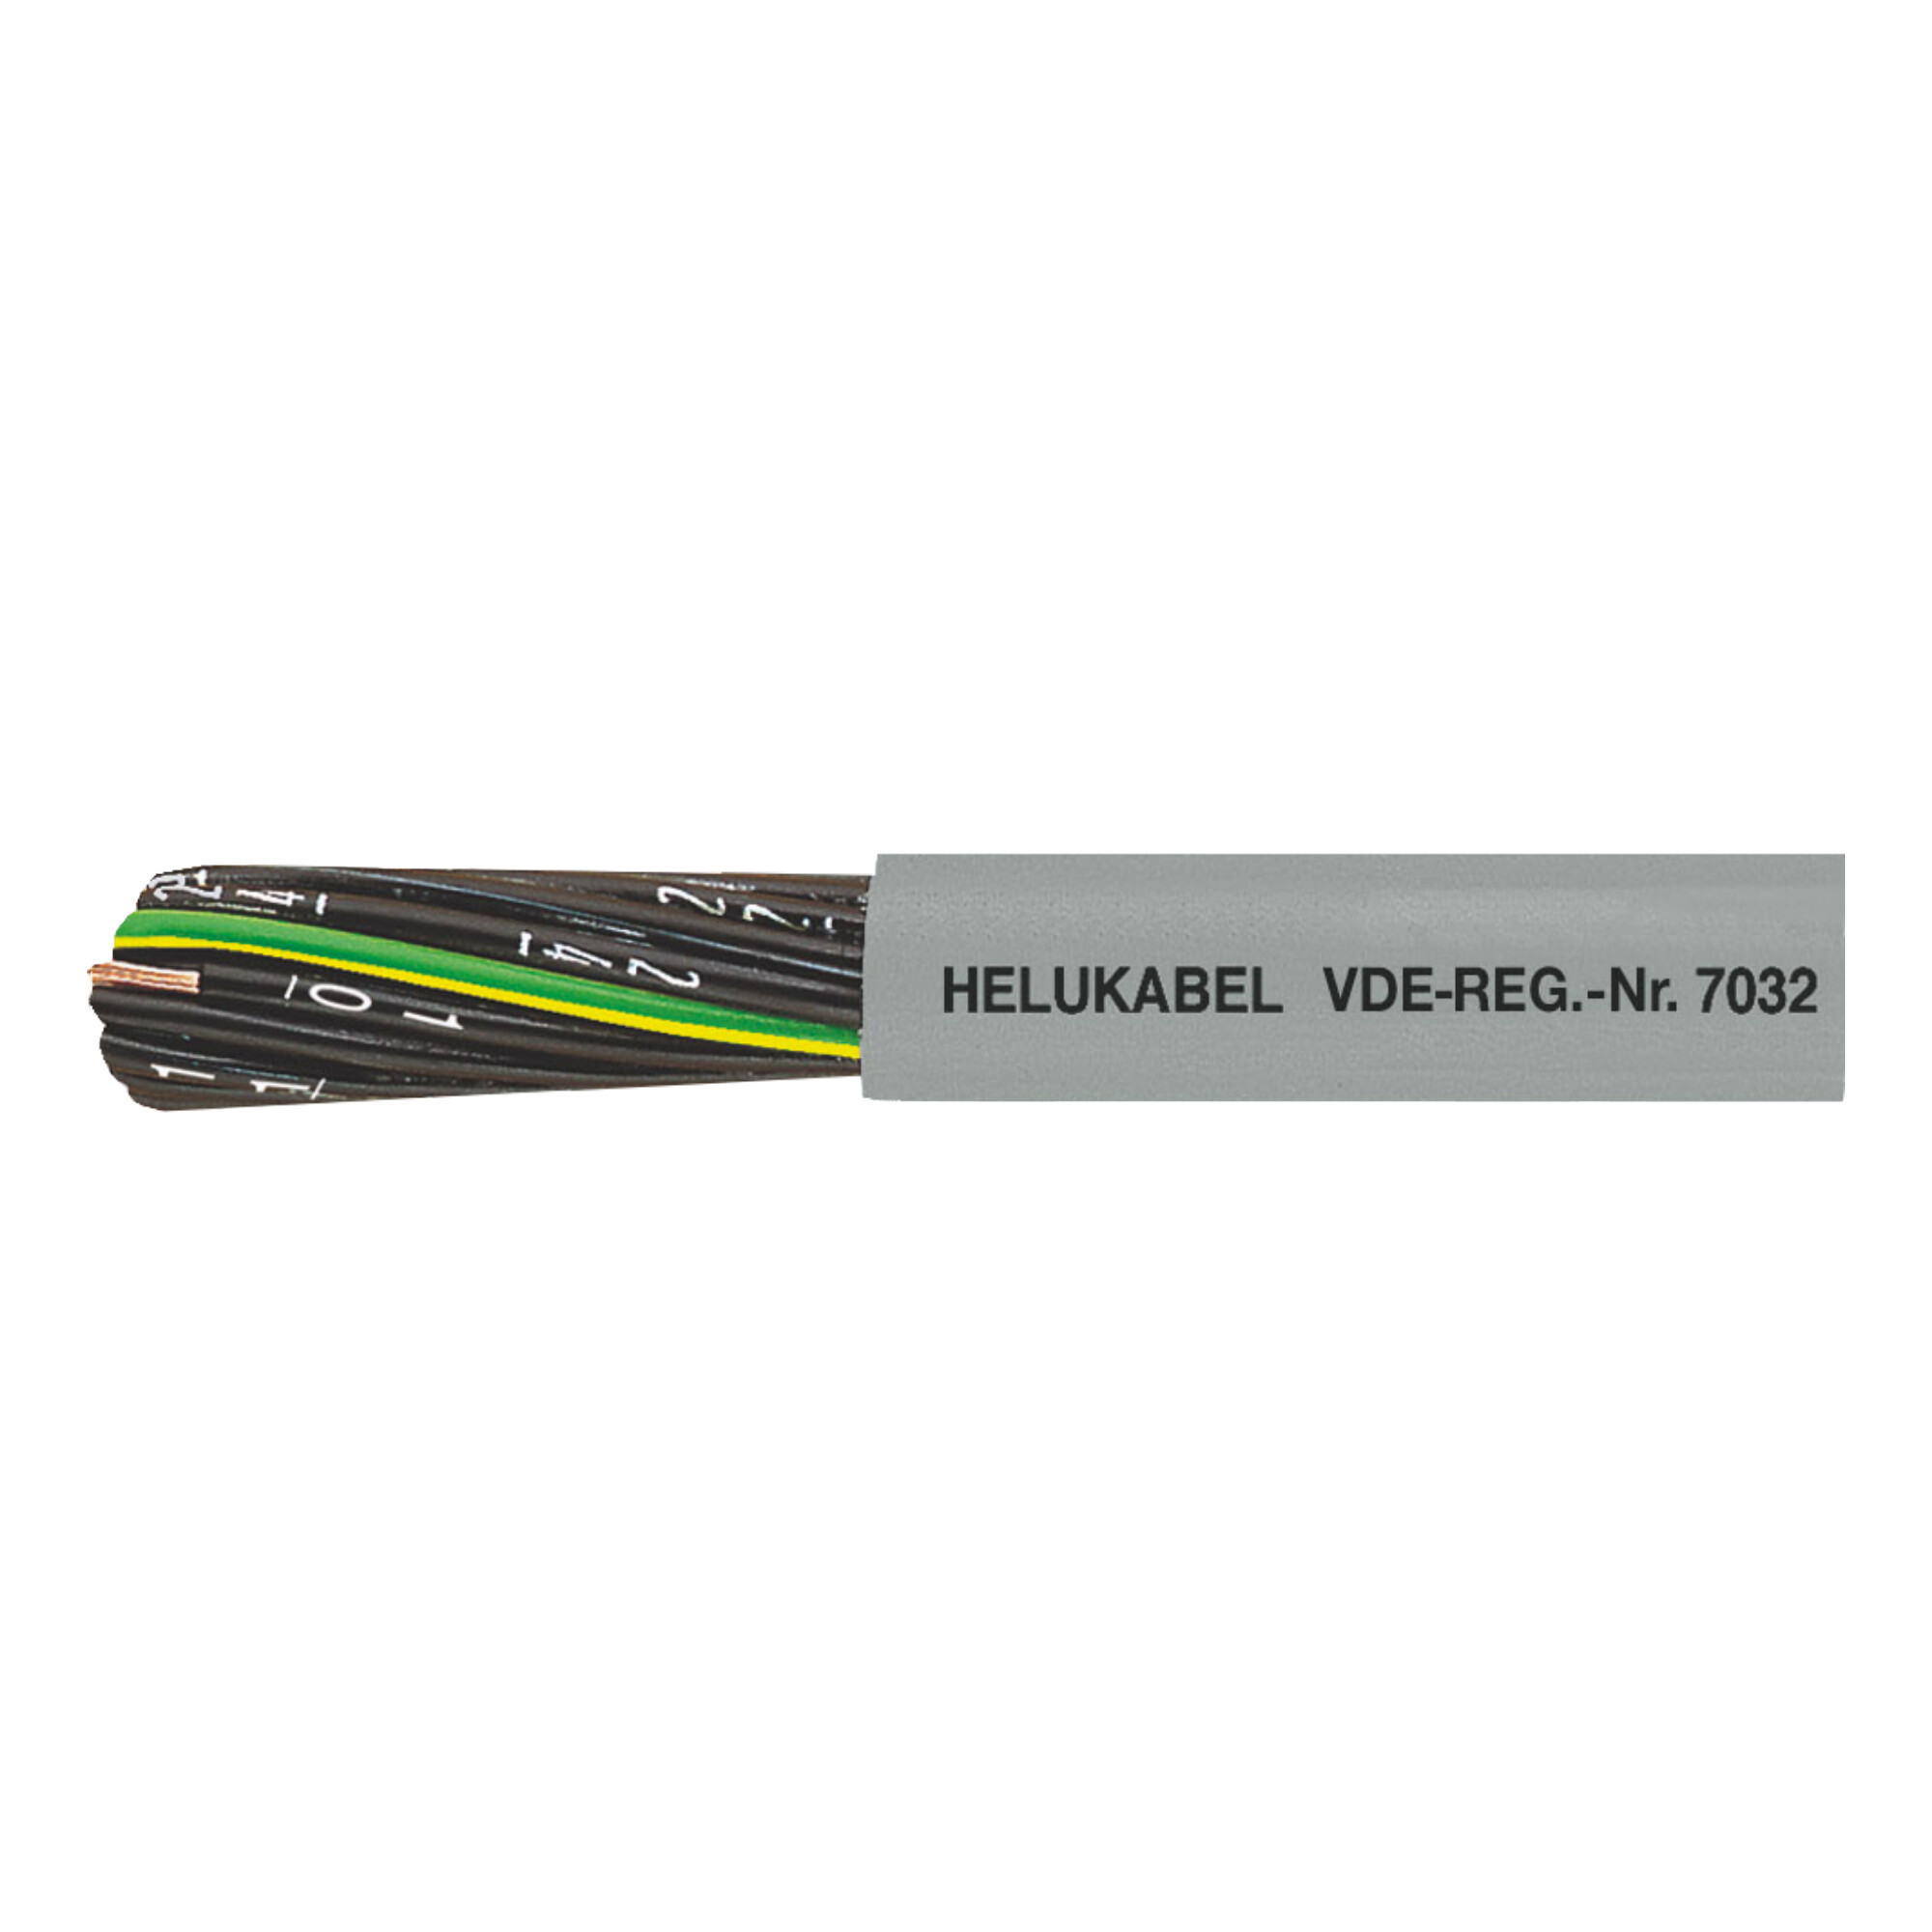 30-10070H0500 JZ-500 PVC buitenmantel en genummerde aders, incl. groen-geel.
Zonder groen/gele ader = serie OZ-500